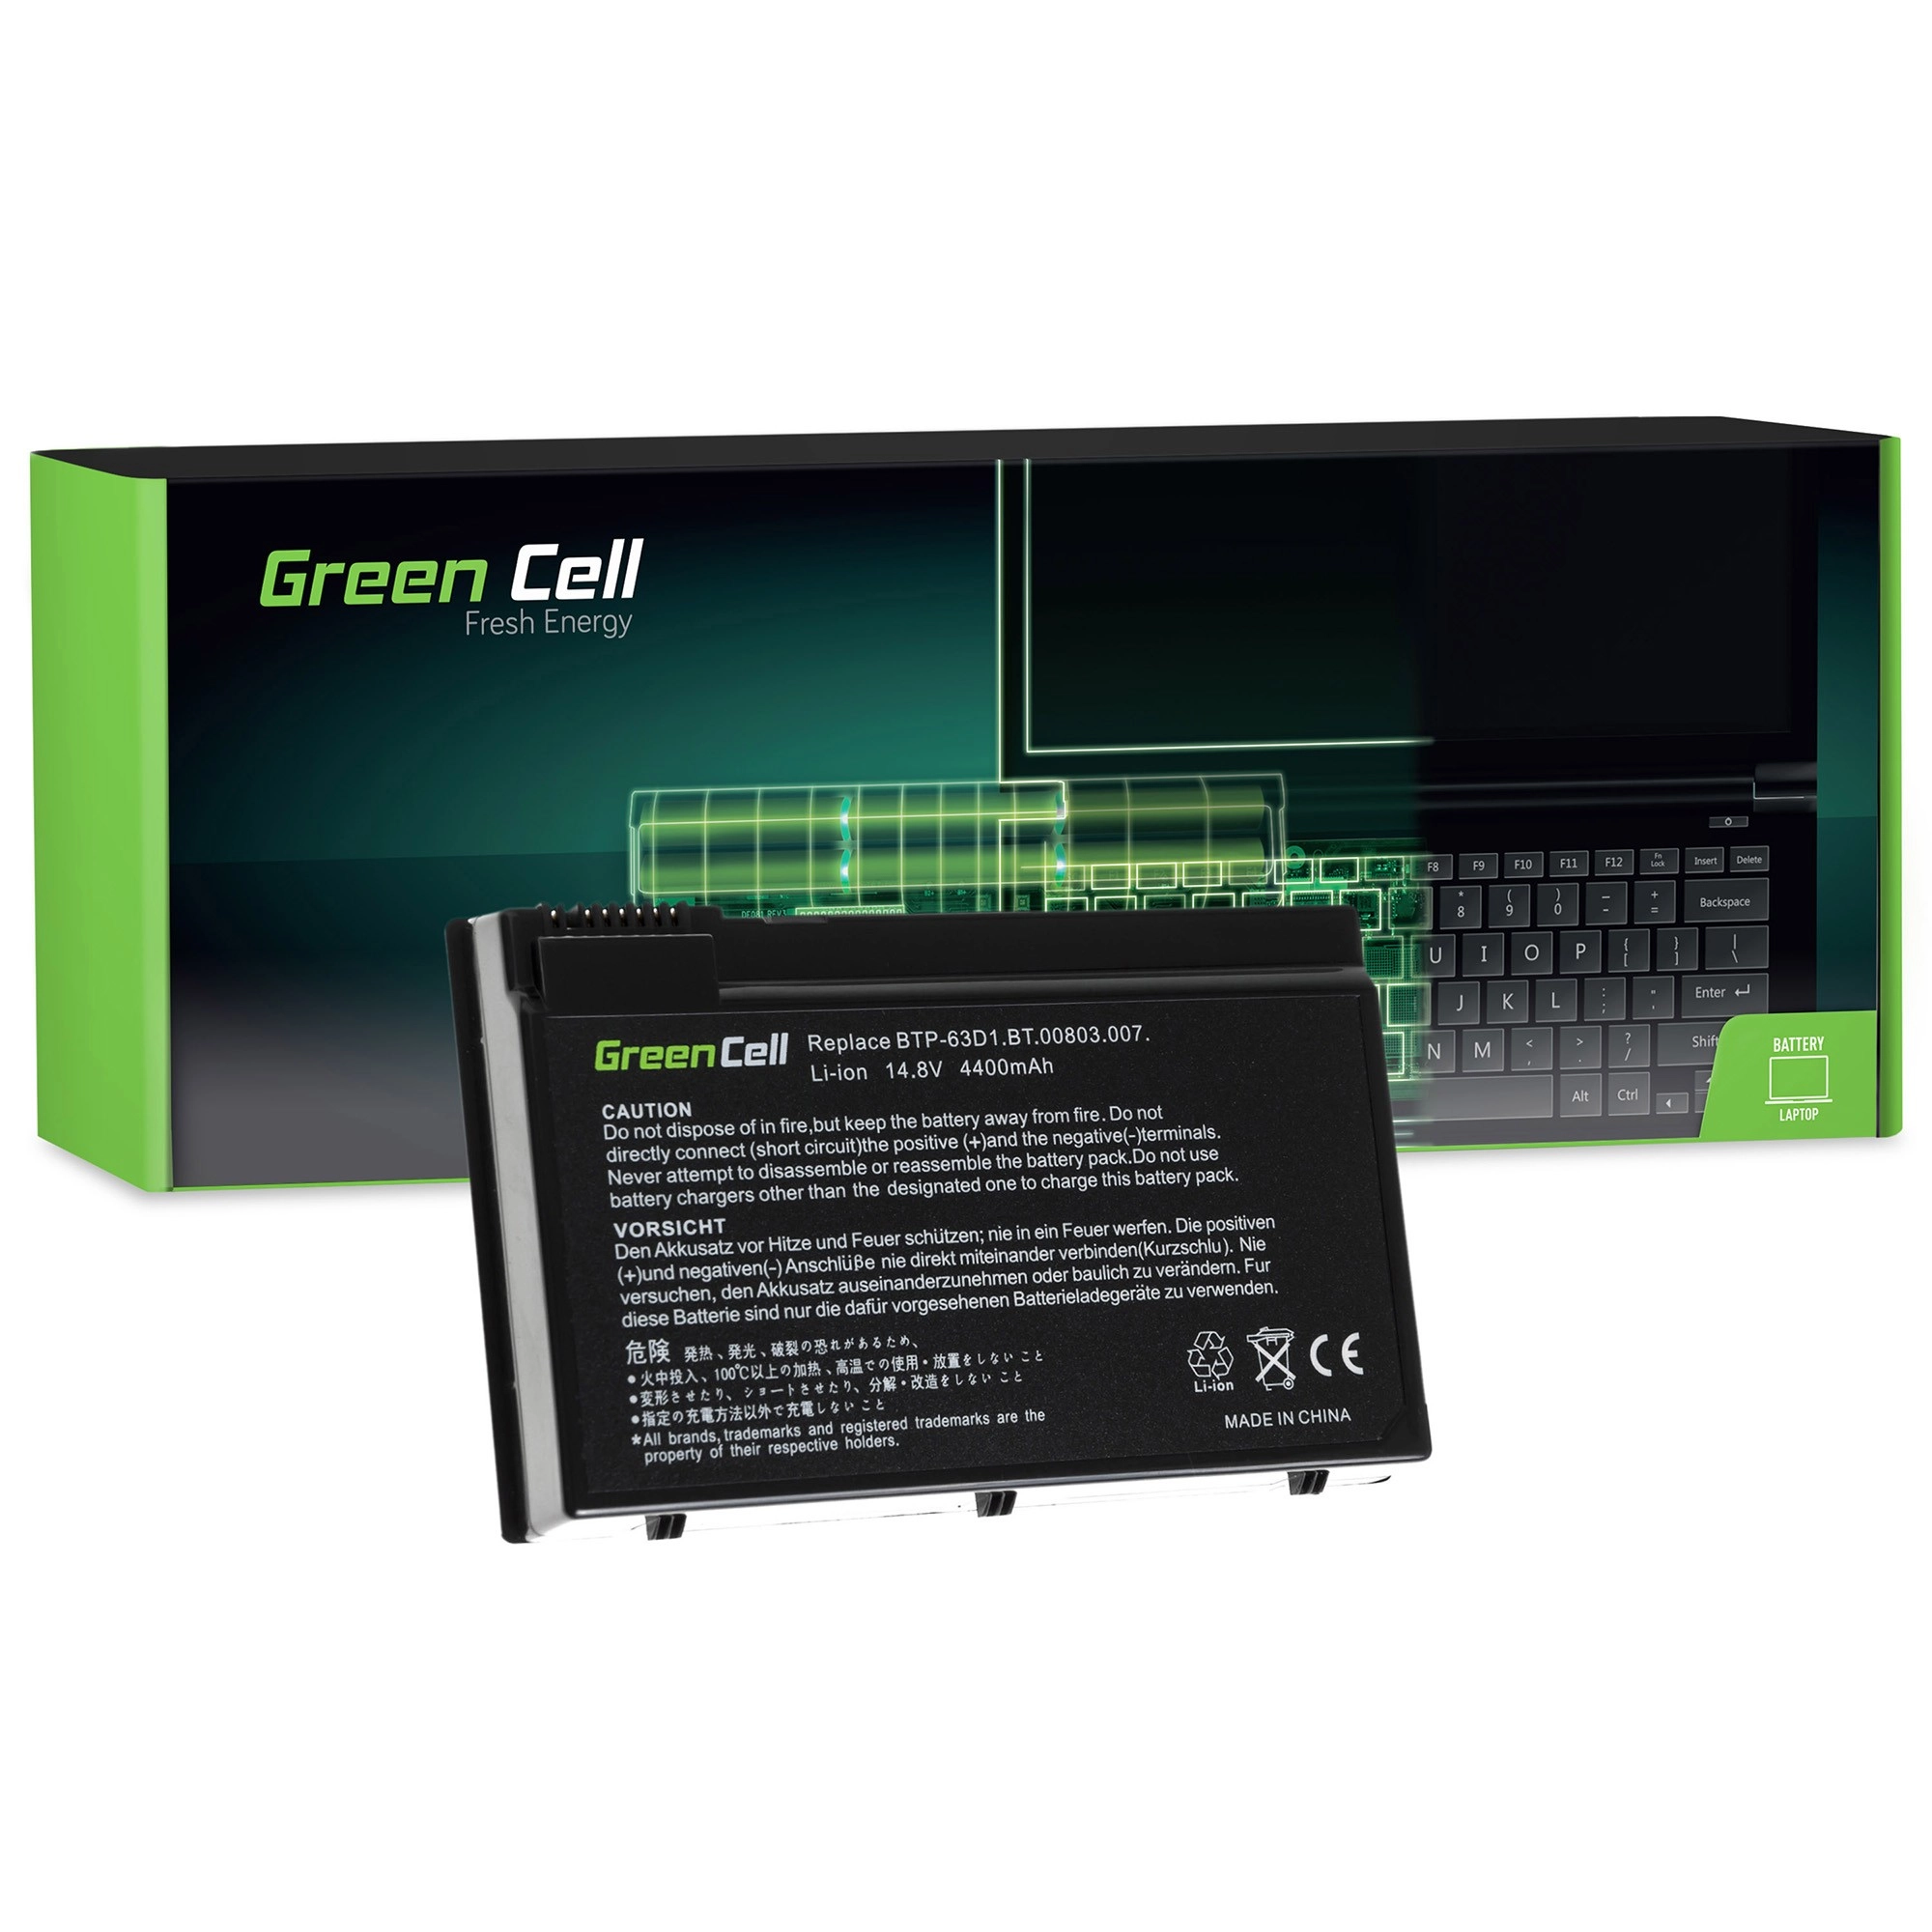 Green Cell Battery for Acer TravelMate 4400 C300 2410 Aspire 3020 3610 5020 / 11,1V 4400mAh